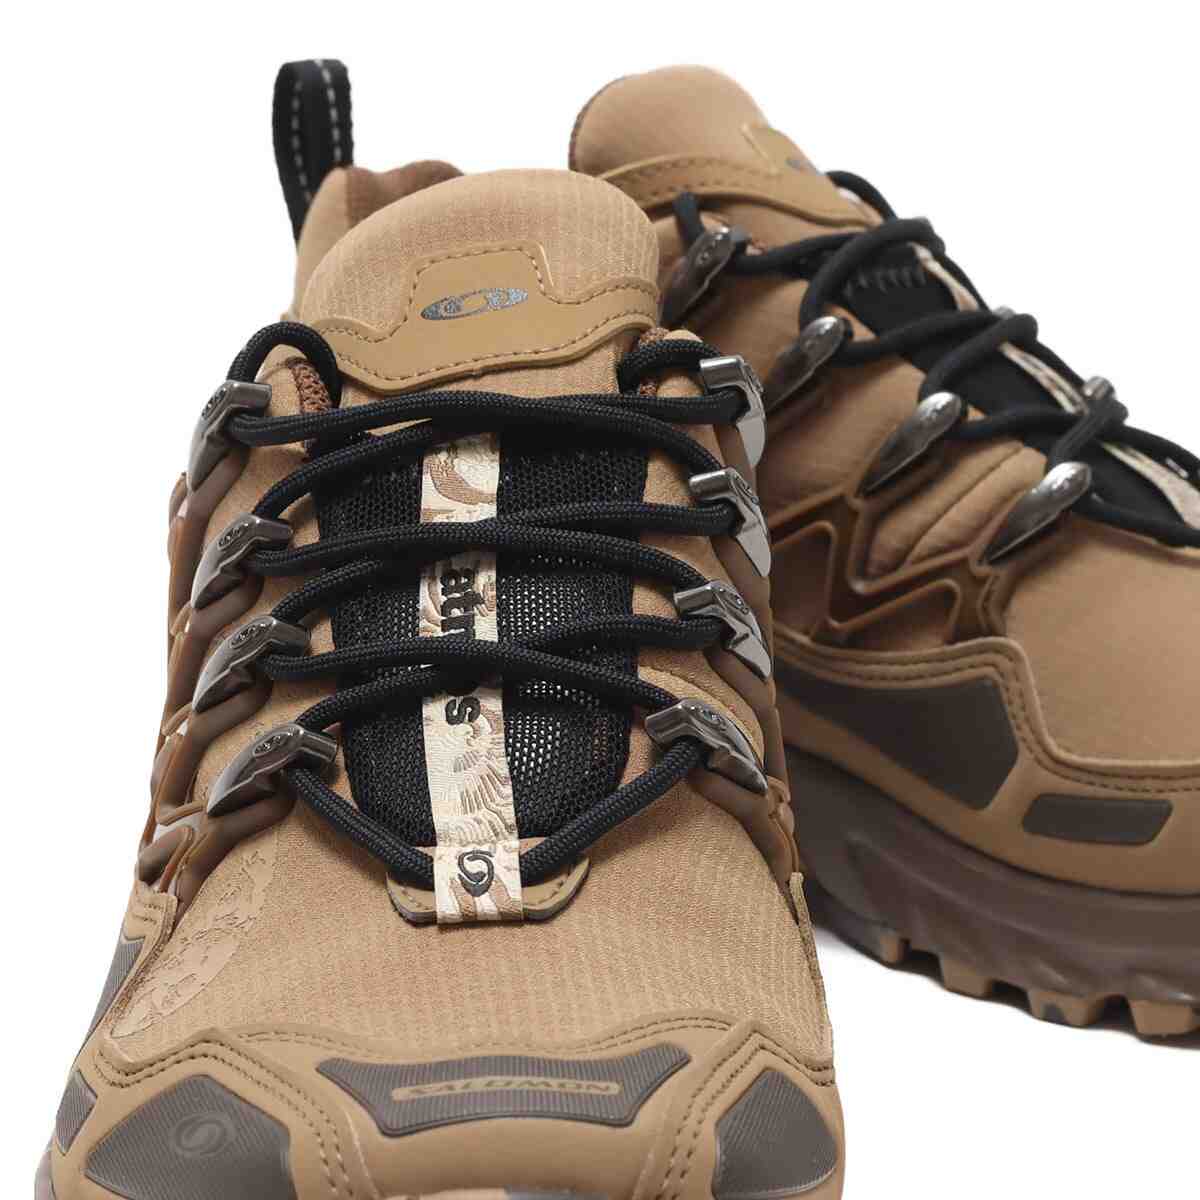 运动鞋, 跑鞋, 越野跑鞋, Salomon, atmos - atmos x Salomon ACS + CSWP “Strata Fossil” 将于10月7日发售